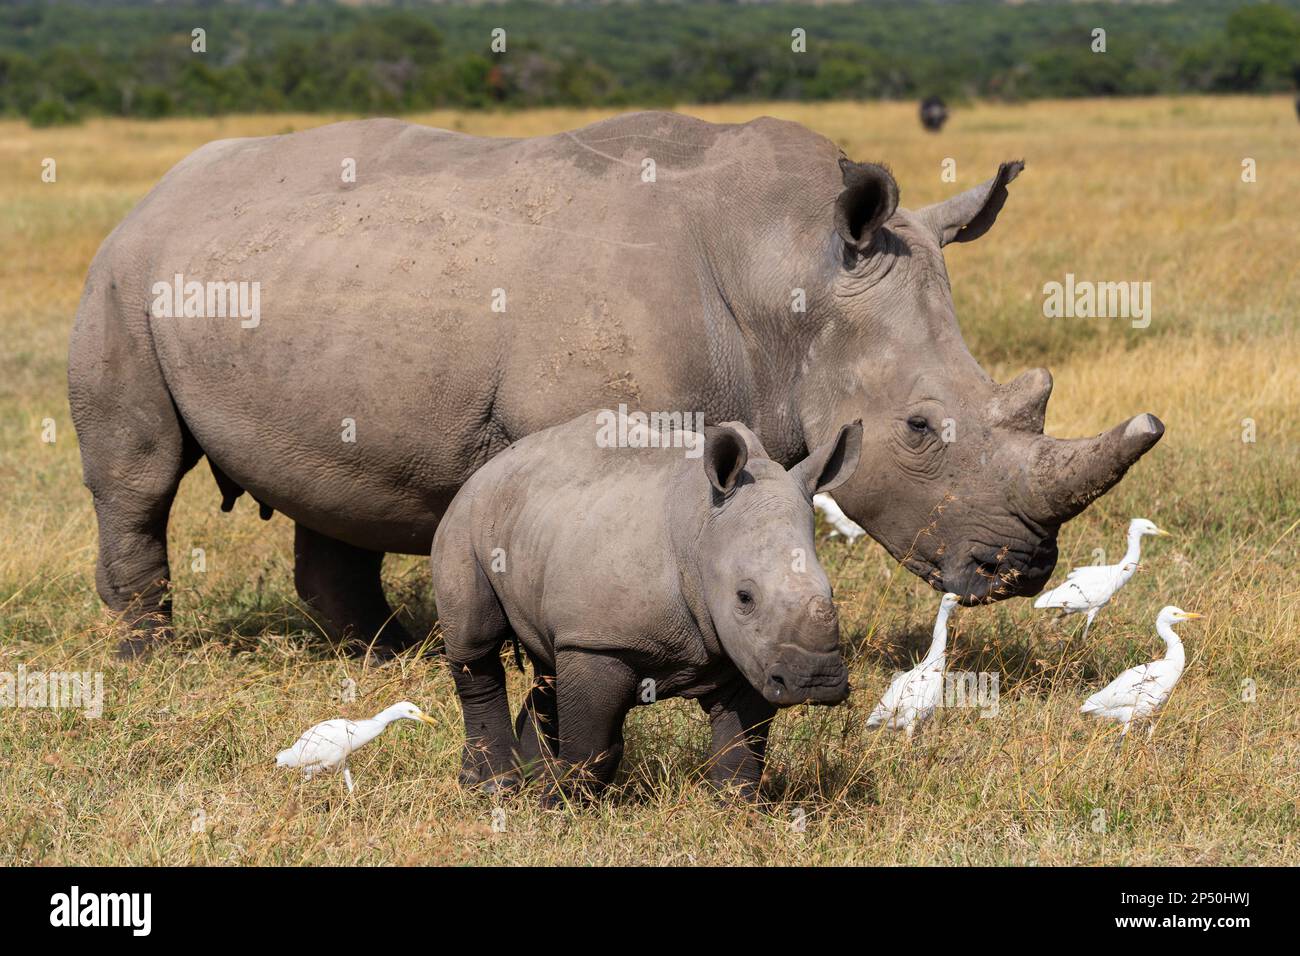 Madre y bebé del rinoceronte blanco del sur en OL Pejeta Conservancy Kenia Foto de stock